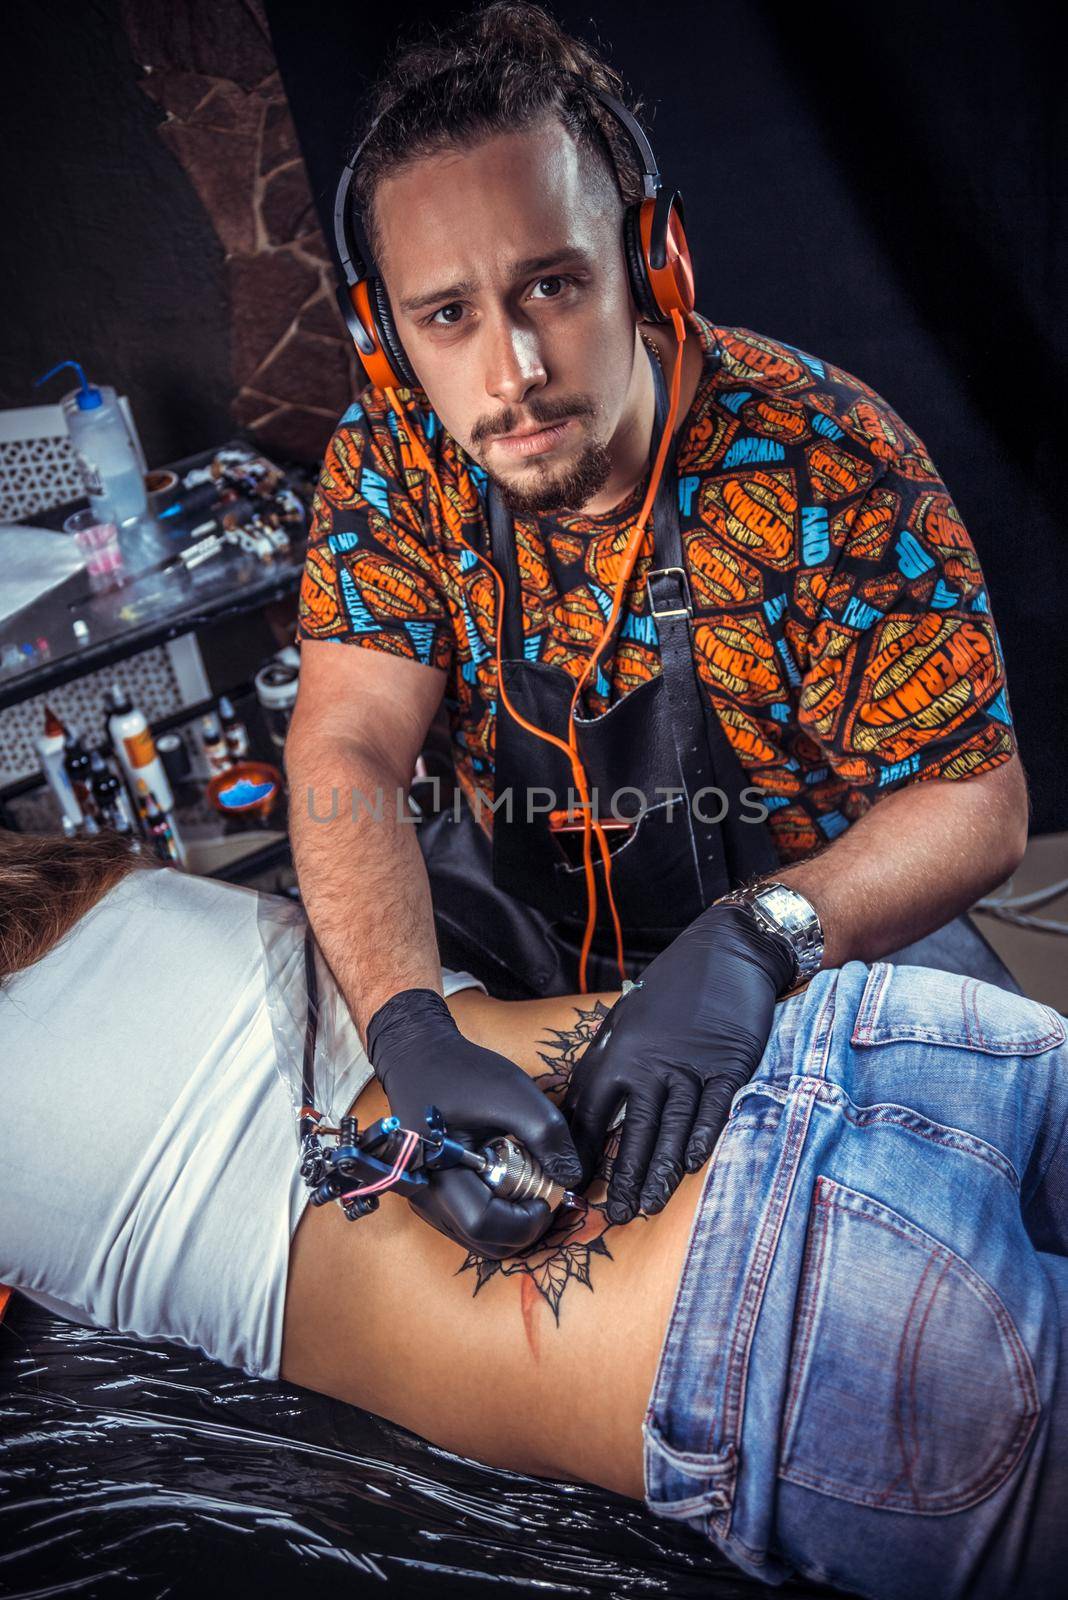 Master tattooist makes a tattoo on the skin in tattoo parlor./Professional tattooist doing tattoo picture in tattoo parlour.